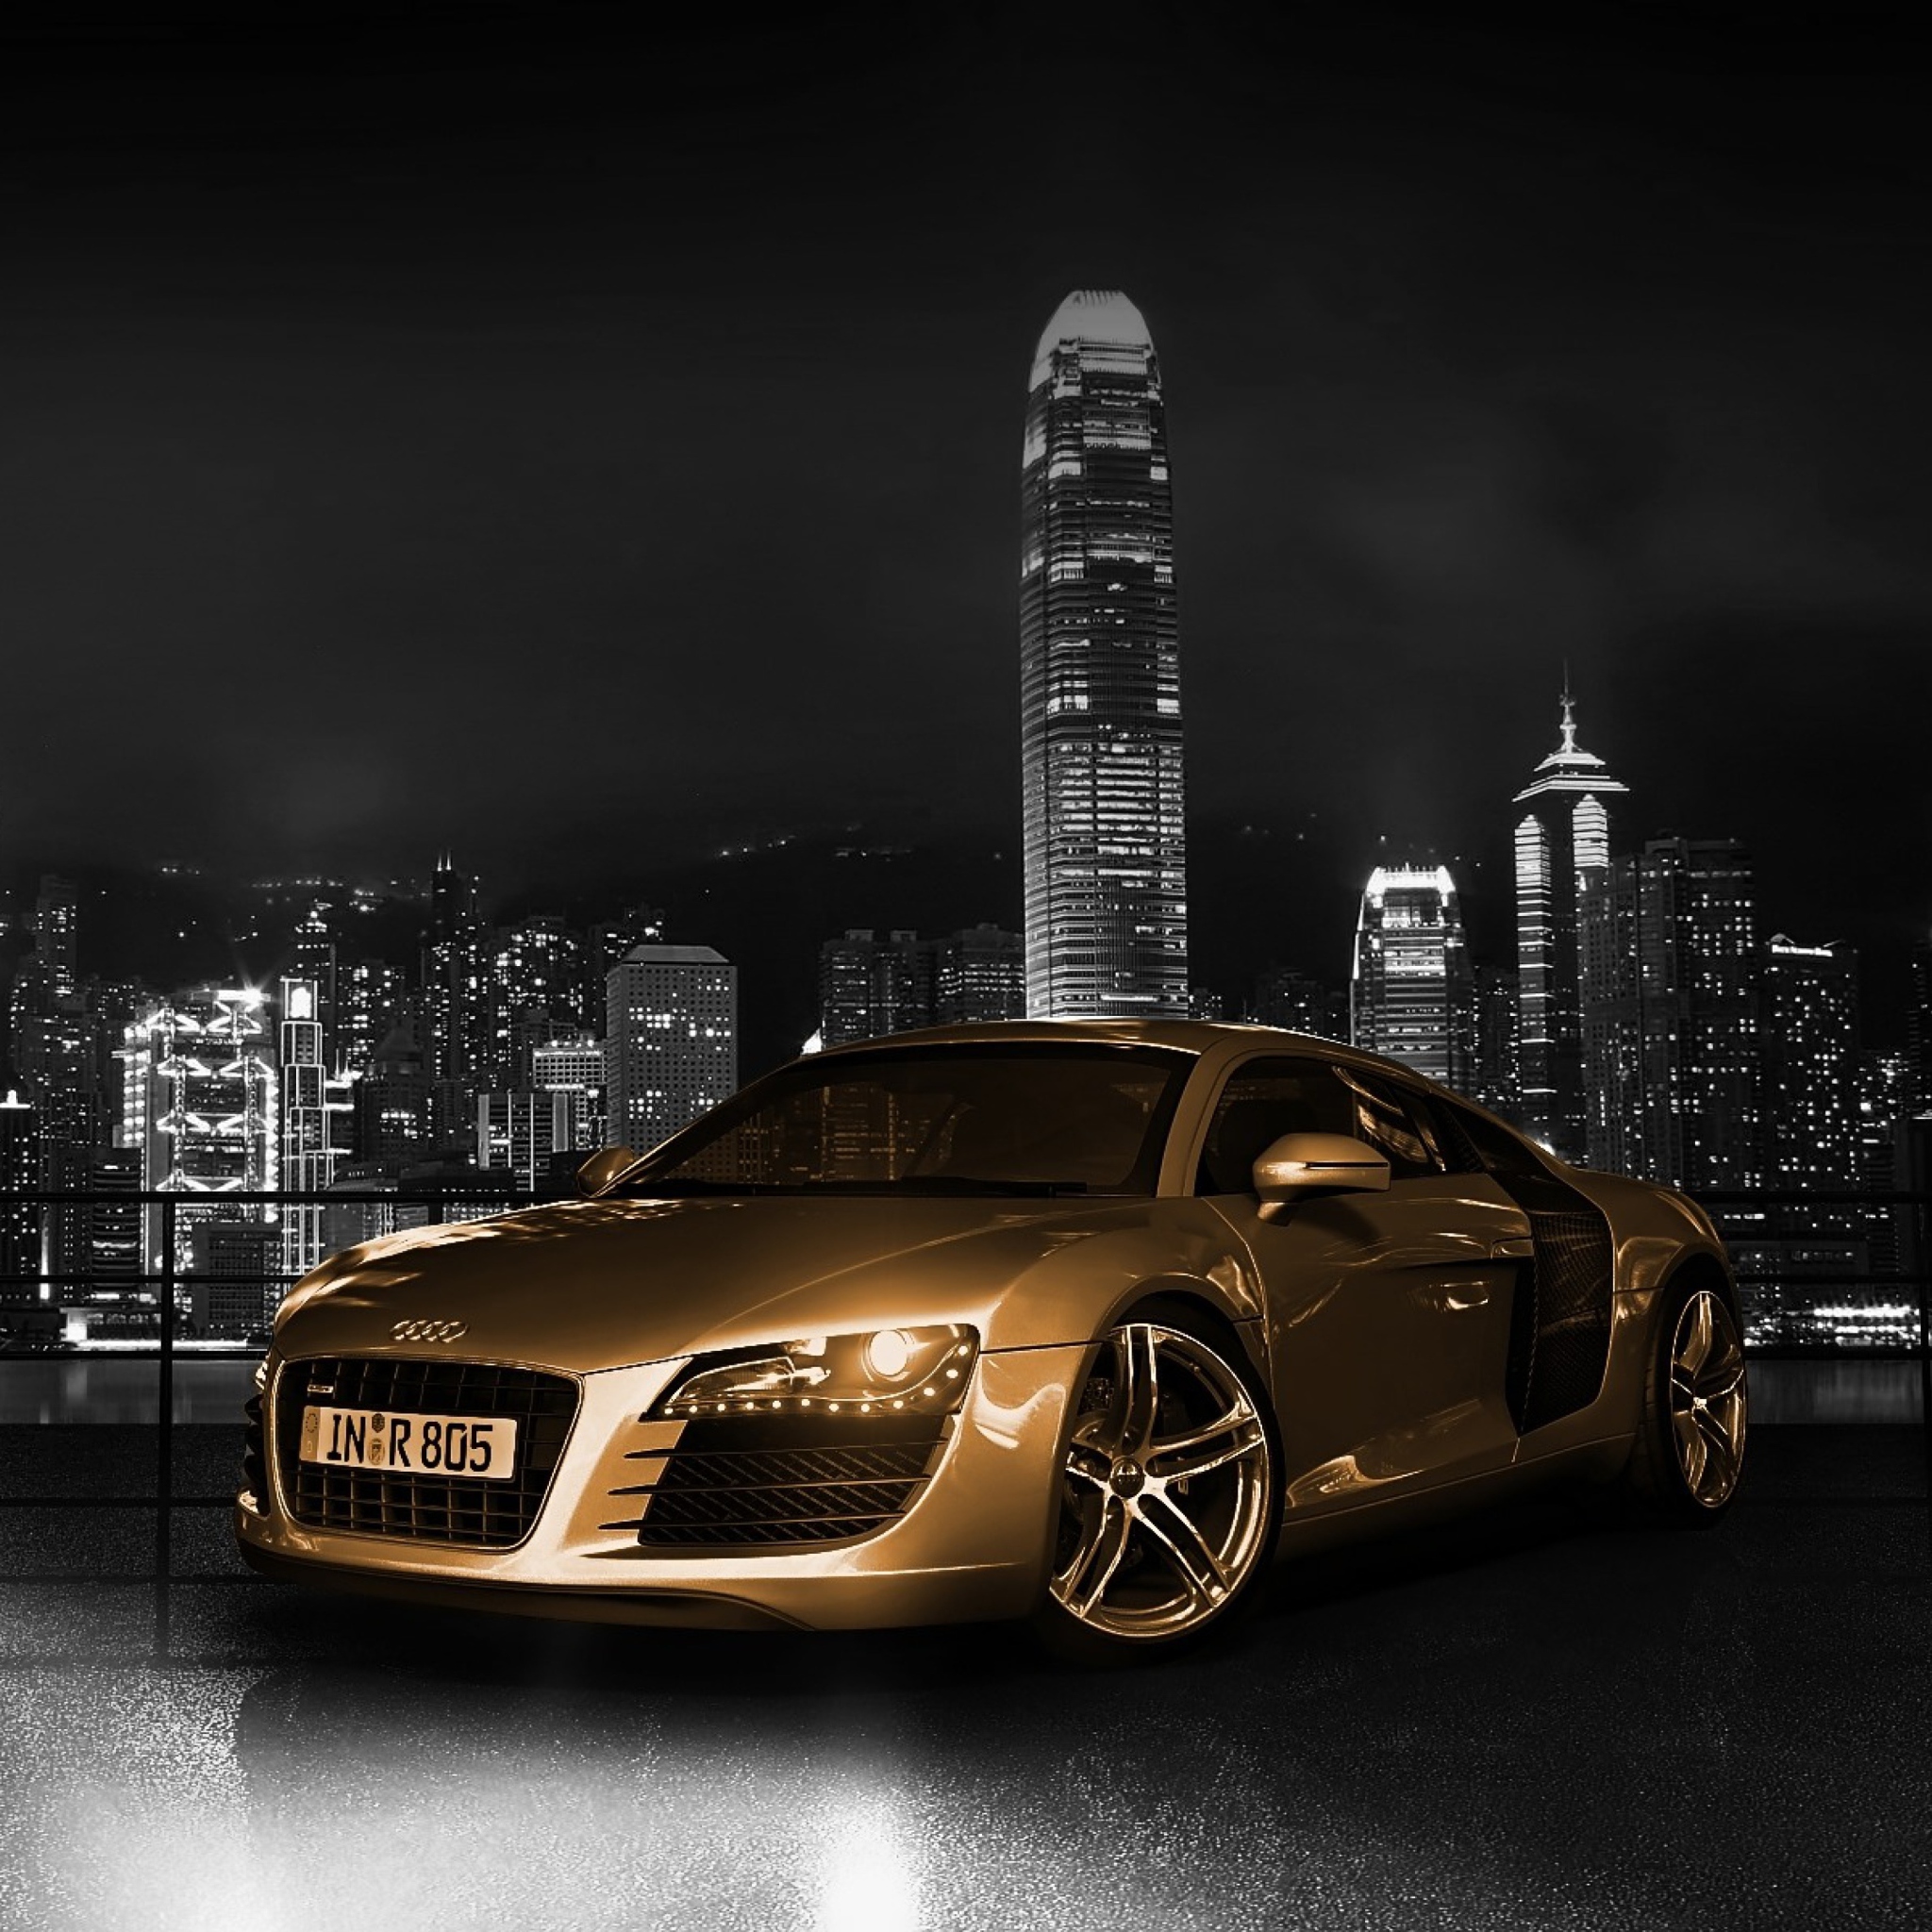 Sfondi Gold And Black Luxury Audi 2048x2048